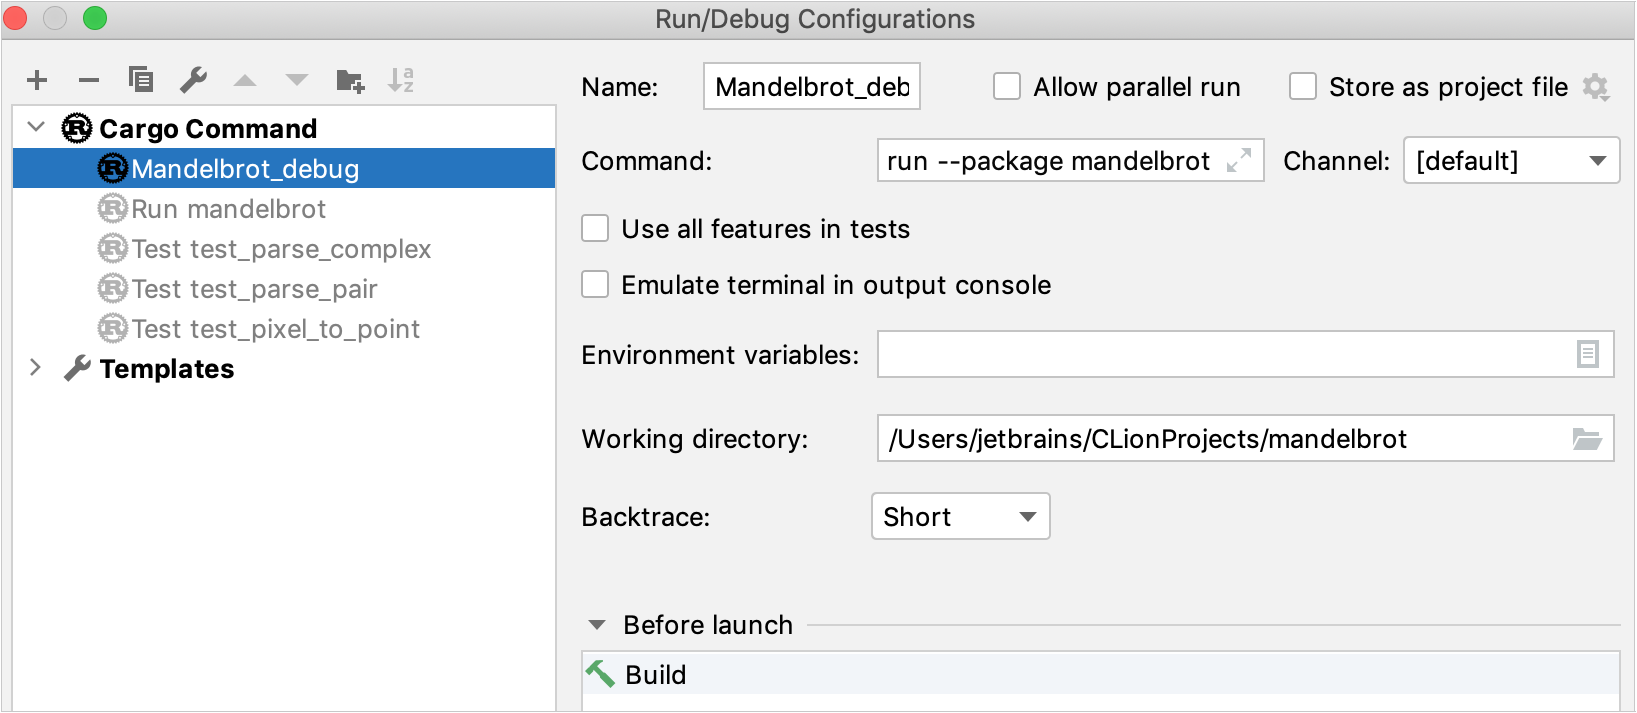 Cargo run/debug configuration